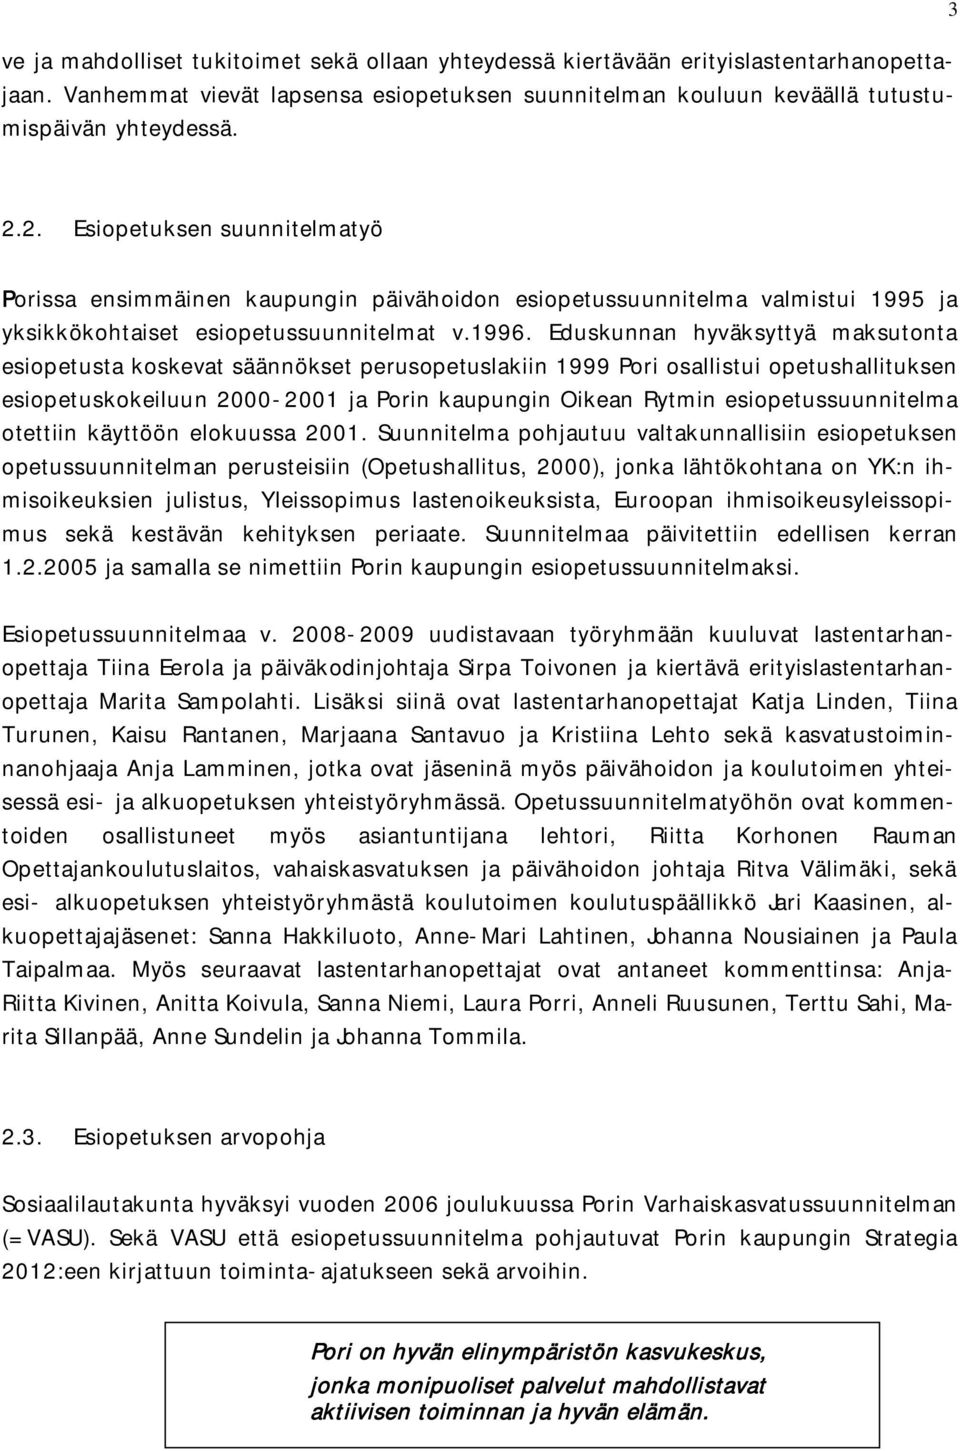 Eduskunnan hyväksyttyä maksutonta esiopetusta koskevat säännökset perusopetuslakiin 1999 Pori osallistui opetushallituksen esiopetuskokeiluun 2000-2001 ja Porin kaupungin Oikean Rytmin